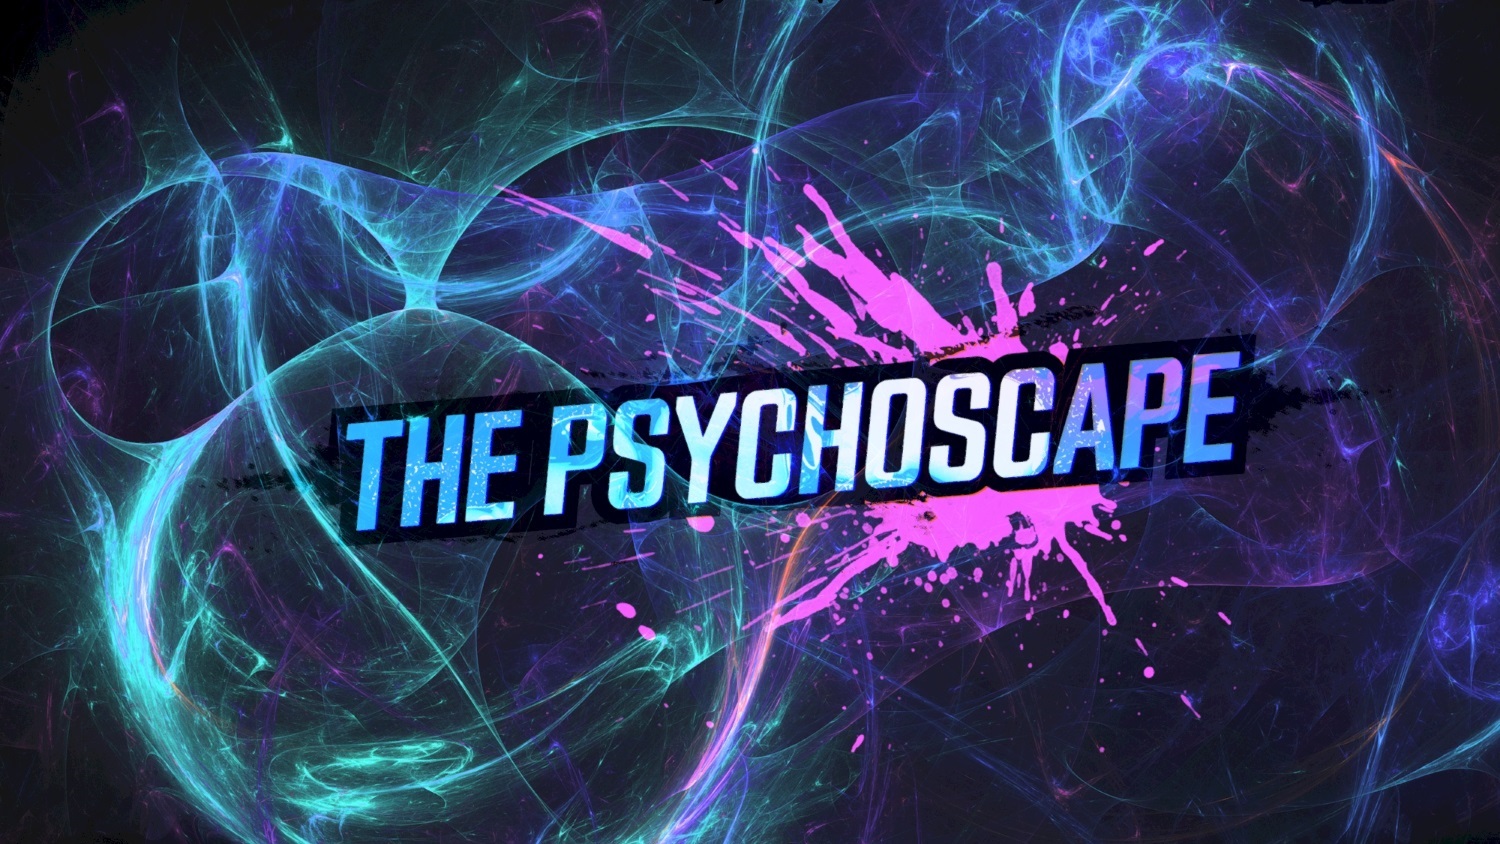 Psychoscape [DVD]